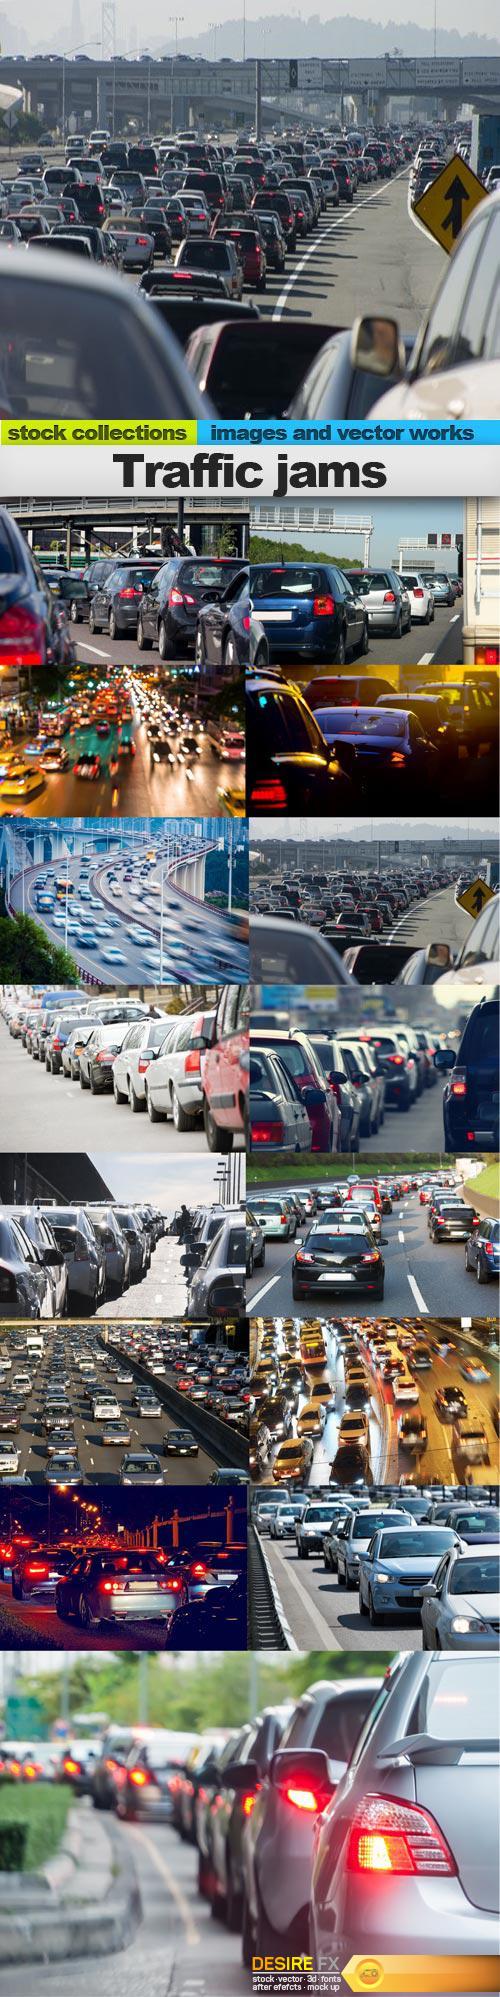 Traffic jams, 15 x UHQ JPEG